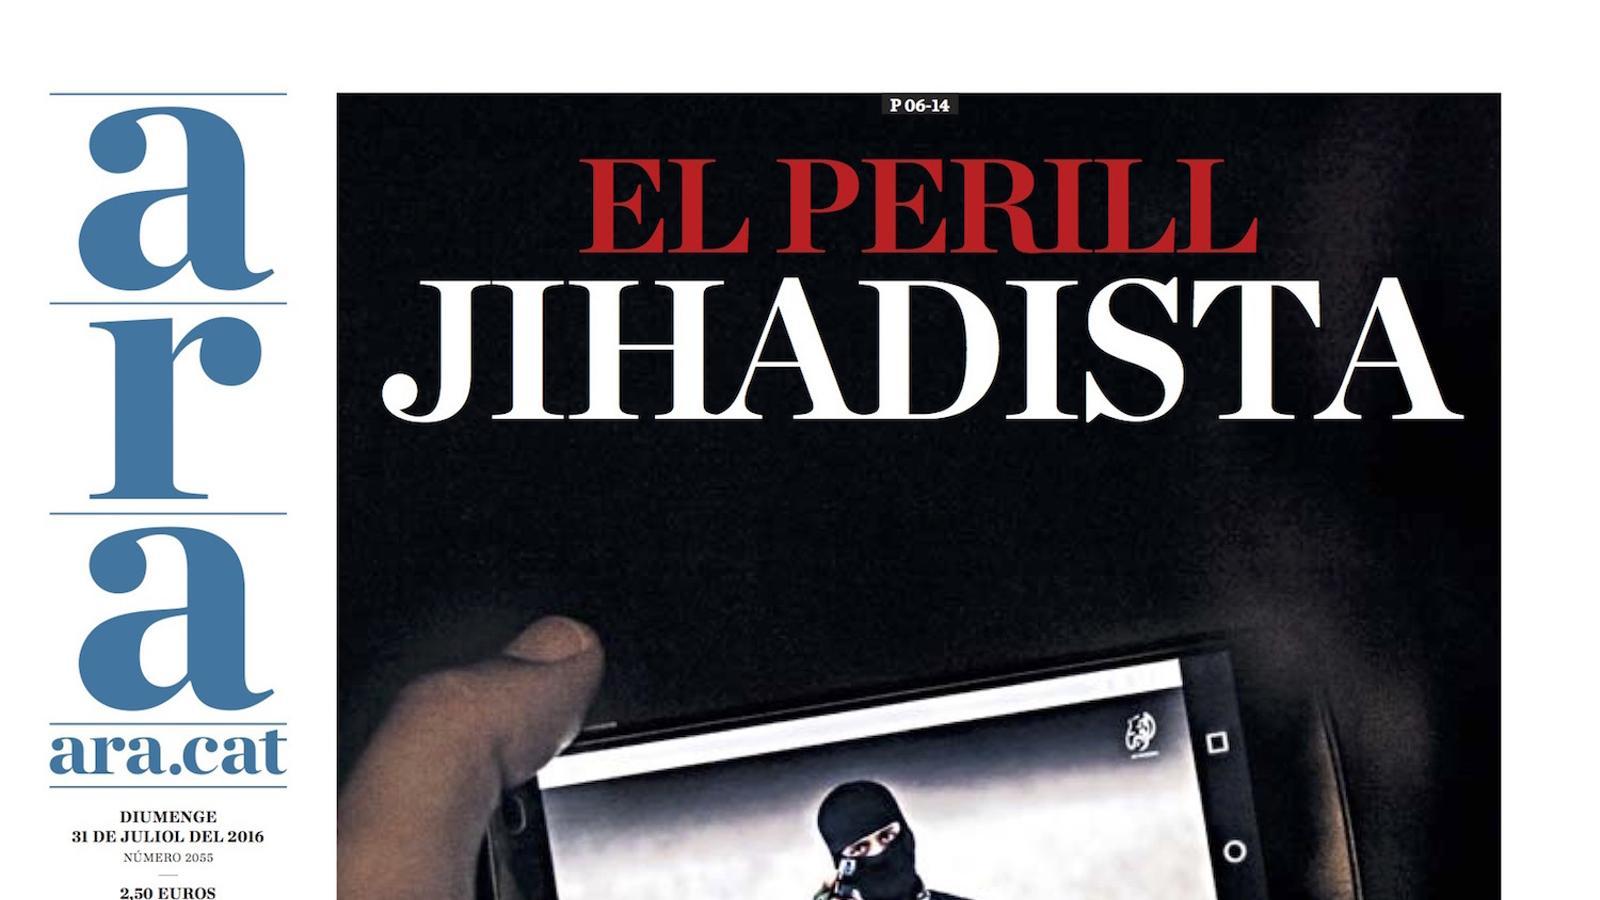 "El perill jihadista: Catalunya, focus de radicalització", a la portada de l'ARA d'aquest diumenge